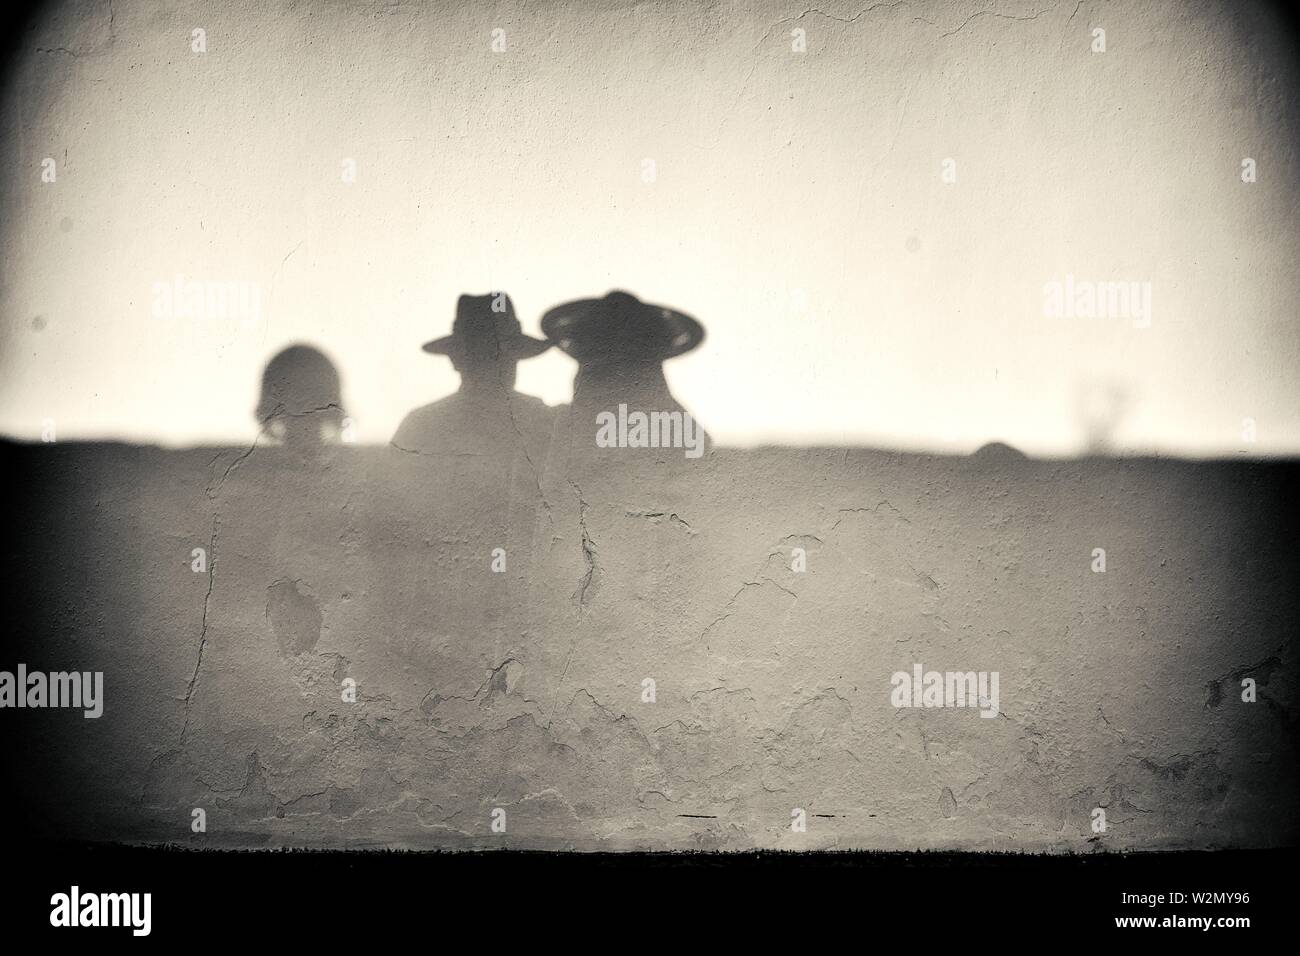 Silhouette der eine nicht erkennbare Mann und Frau mit Strohhut auf einer Wand reflektiert. Mahon, Balearen, Spanien, Europa. Stockfoto